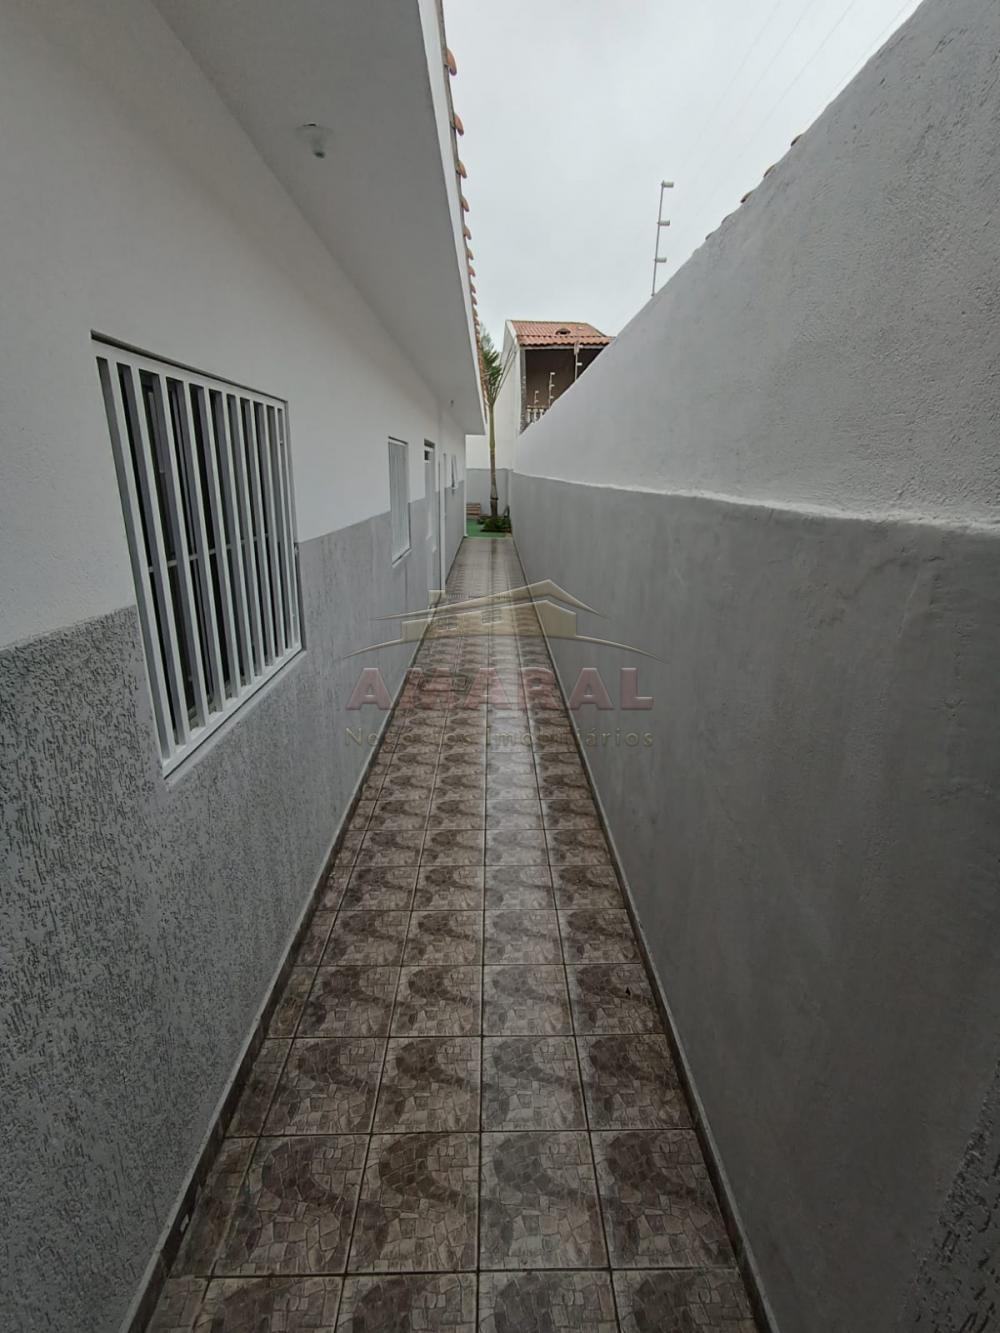 Comprar Casas / Térrea em Suzano R$ 400.000,00 - Foto 5